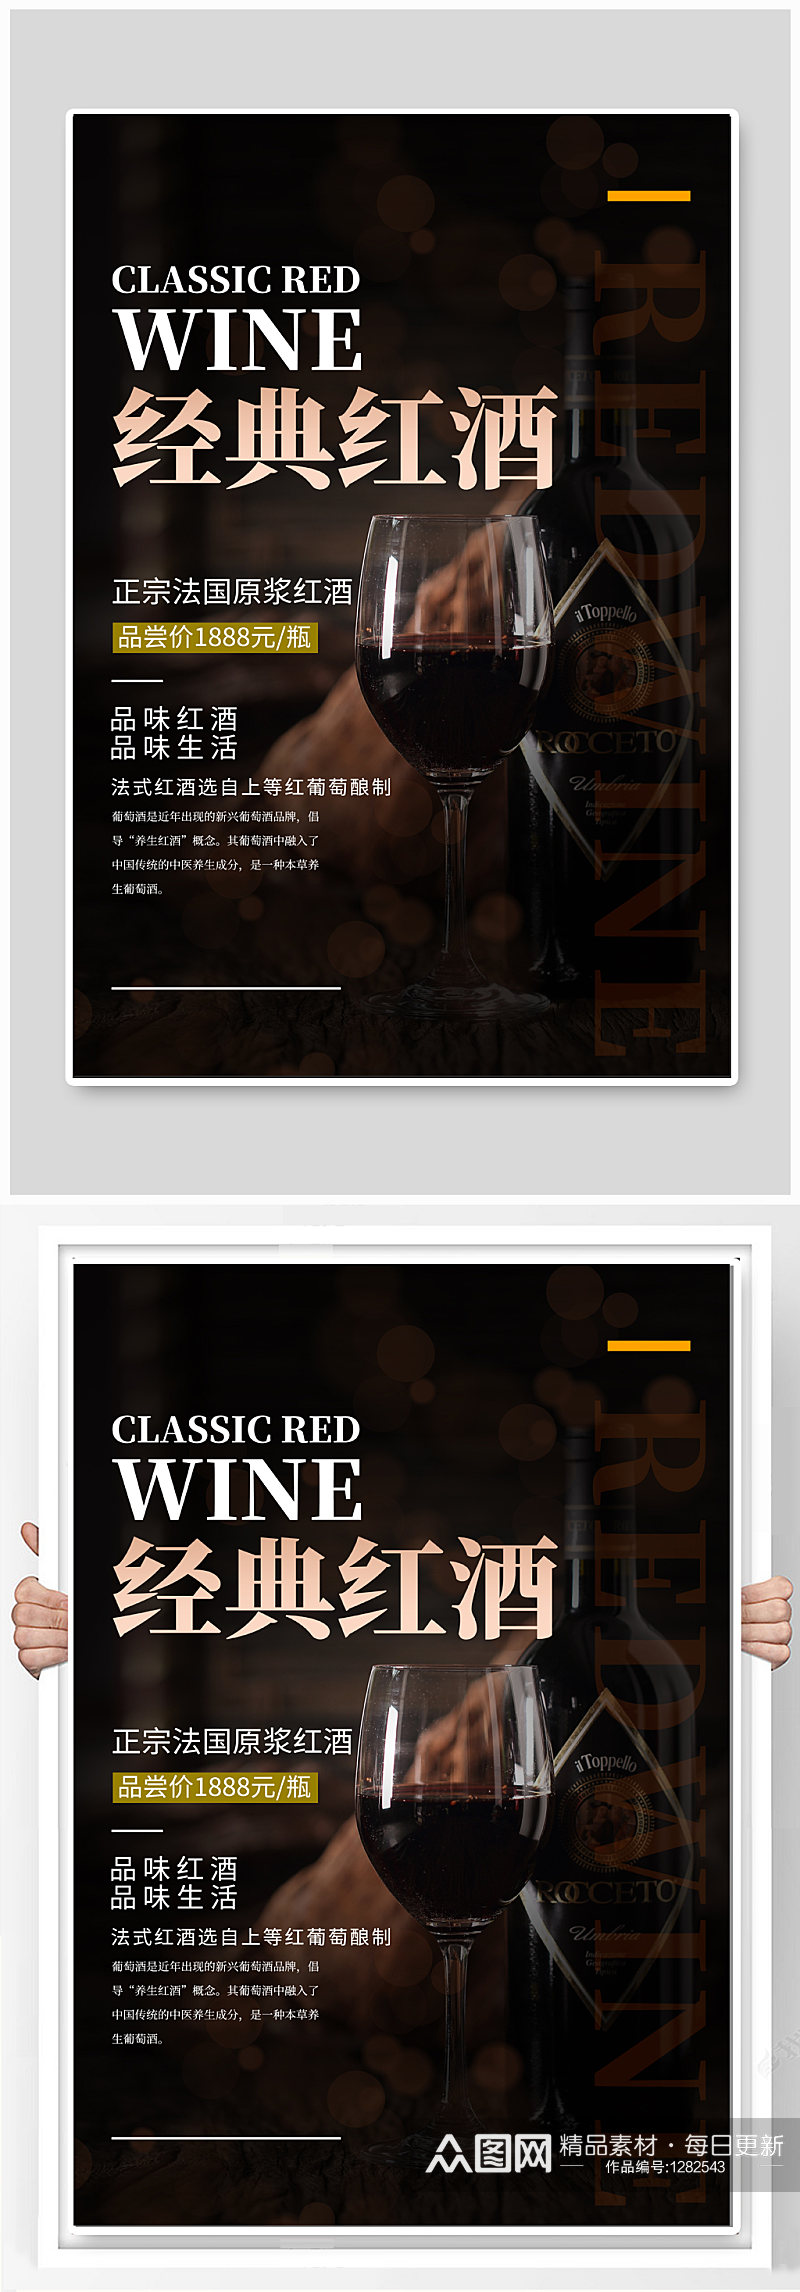 经典红酒酒文化海报素材